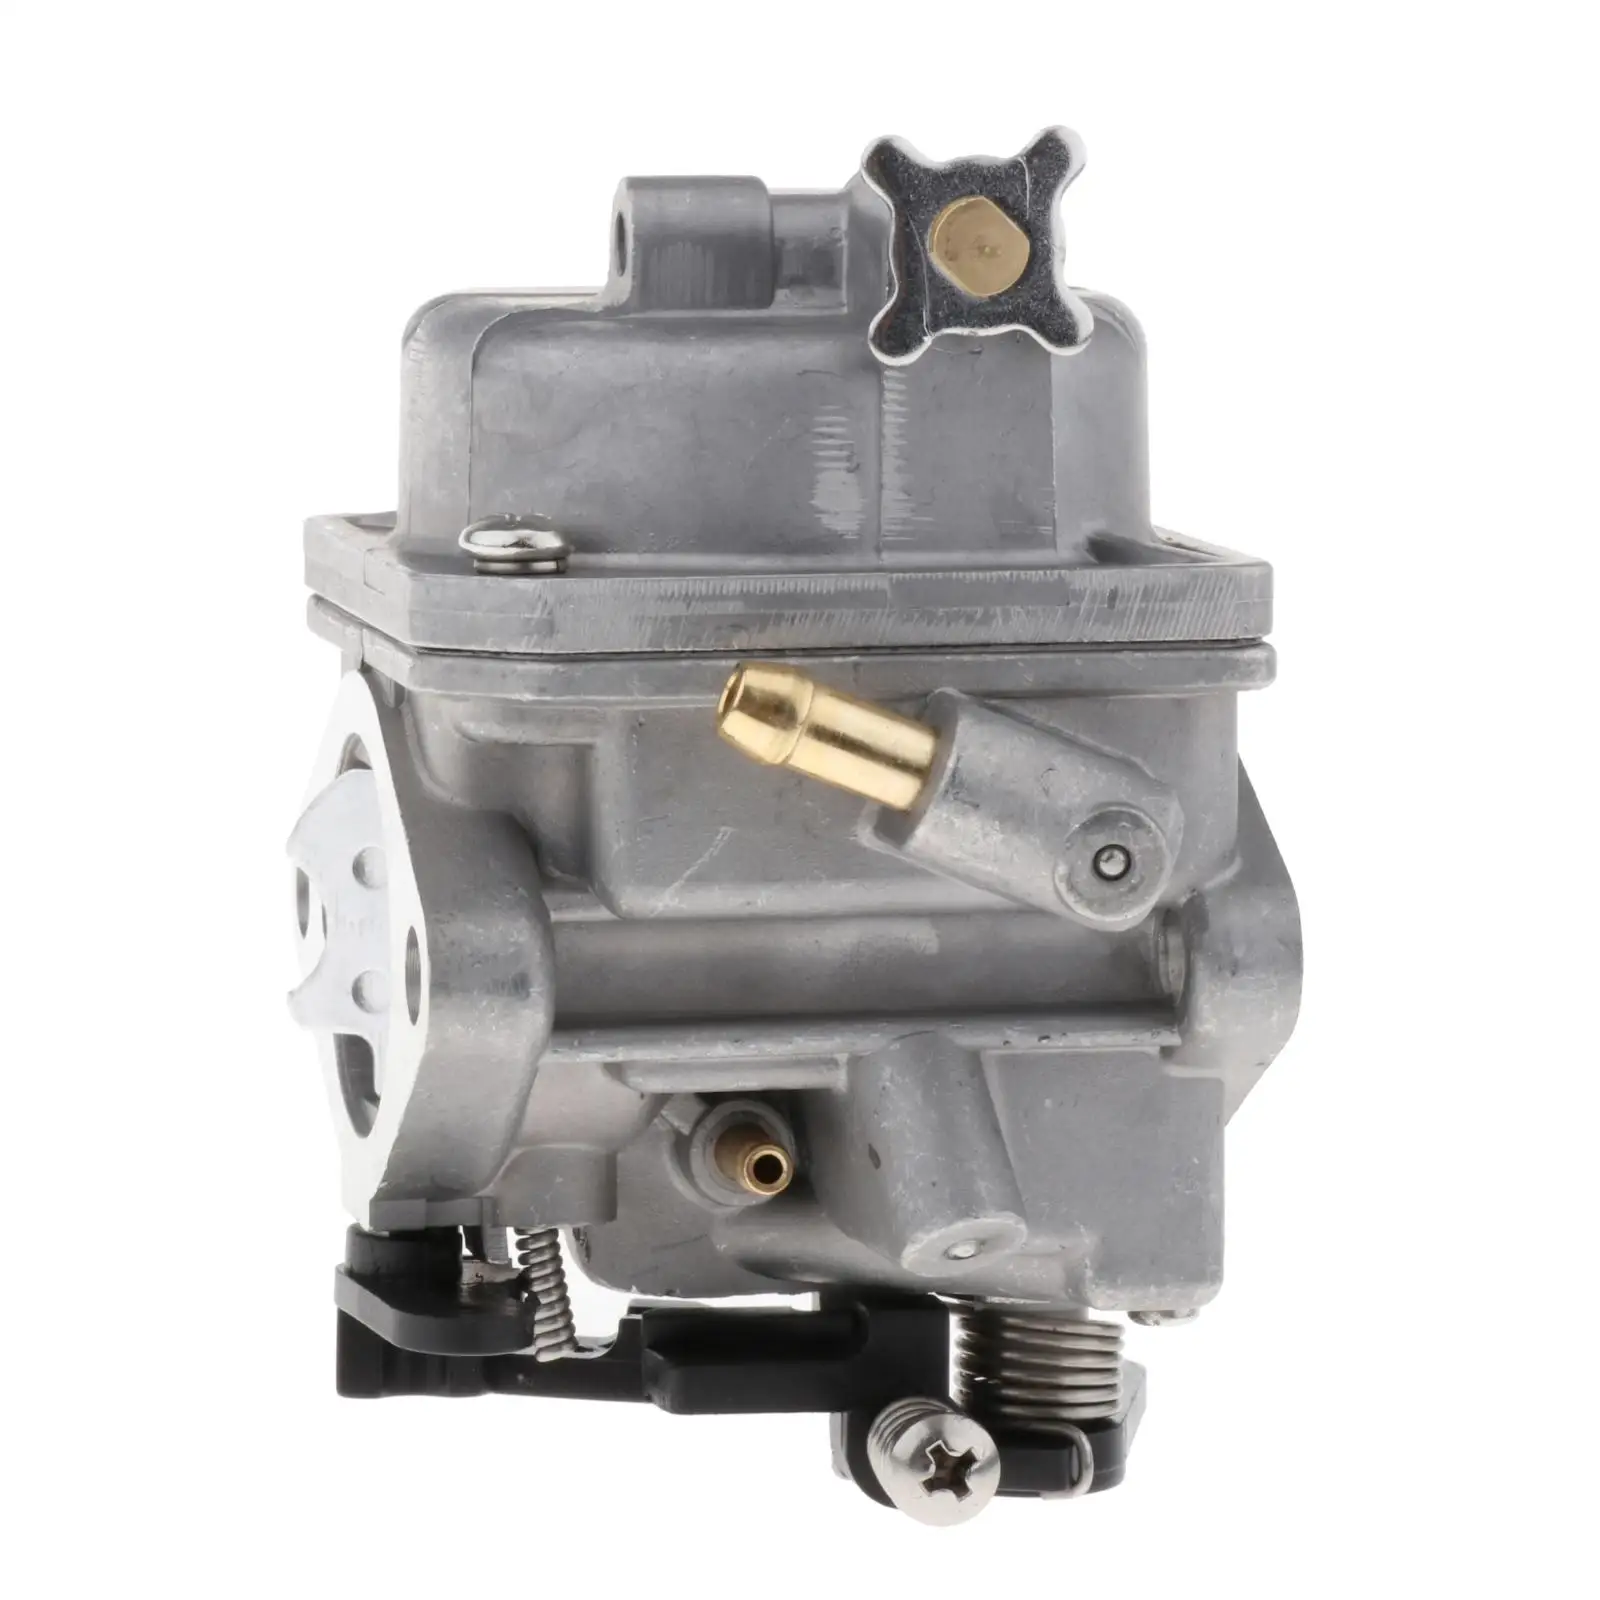 محرك خارجي عالي الجودة 16100-ZV1-A01 Carburetor Assy, قطع غيار لهوندا BC05B BF 5 HP